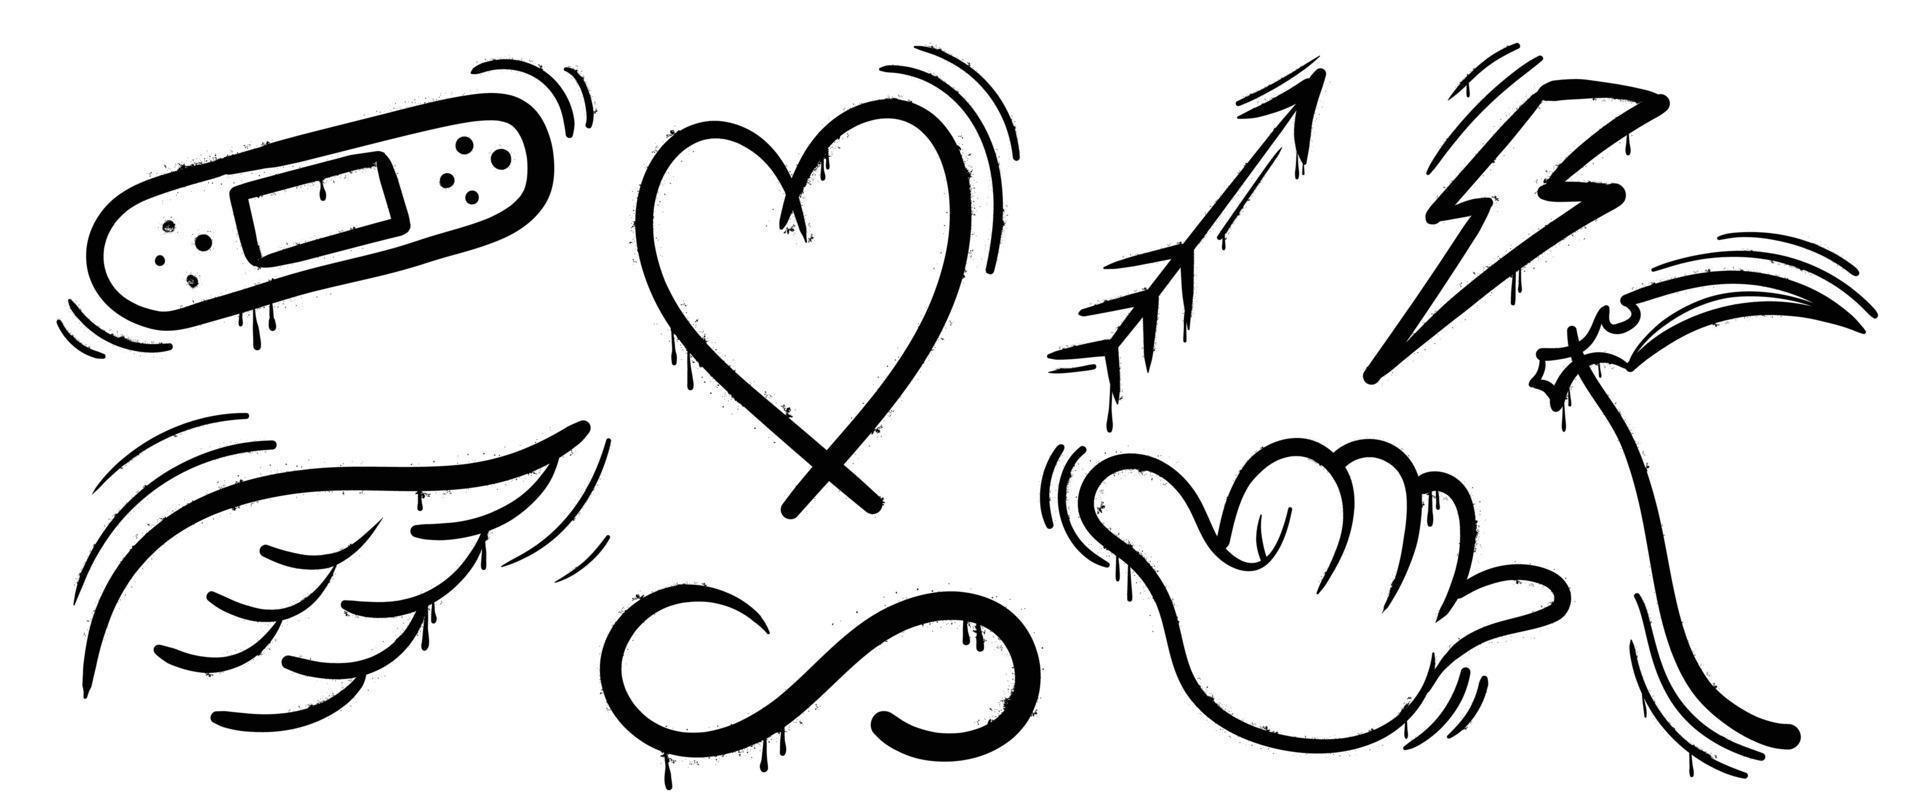 conjunto de vectores de pintura en aerosol de graffiti. colección de textura de aerosol negro de corazón, ala, flecha, rayo, símbolo, yeso, signo. ilustración de diseño para decoración, tarjeta, pegatina. pancarta, arte callejero.